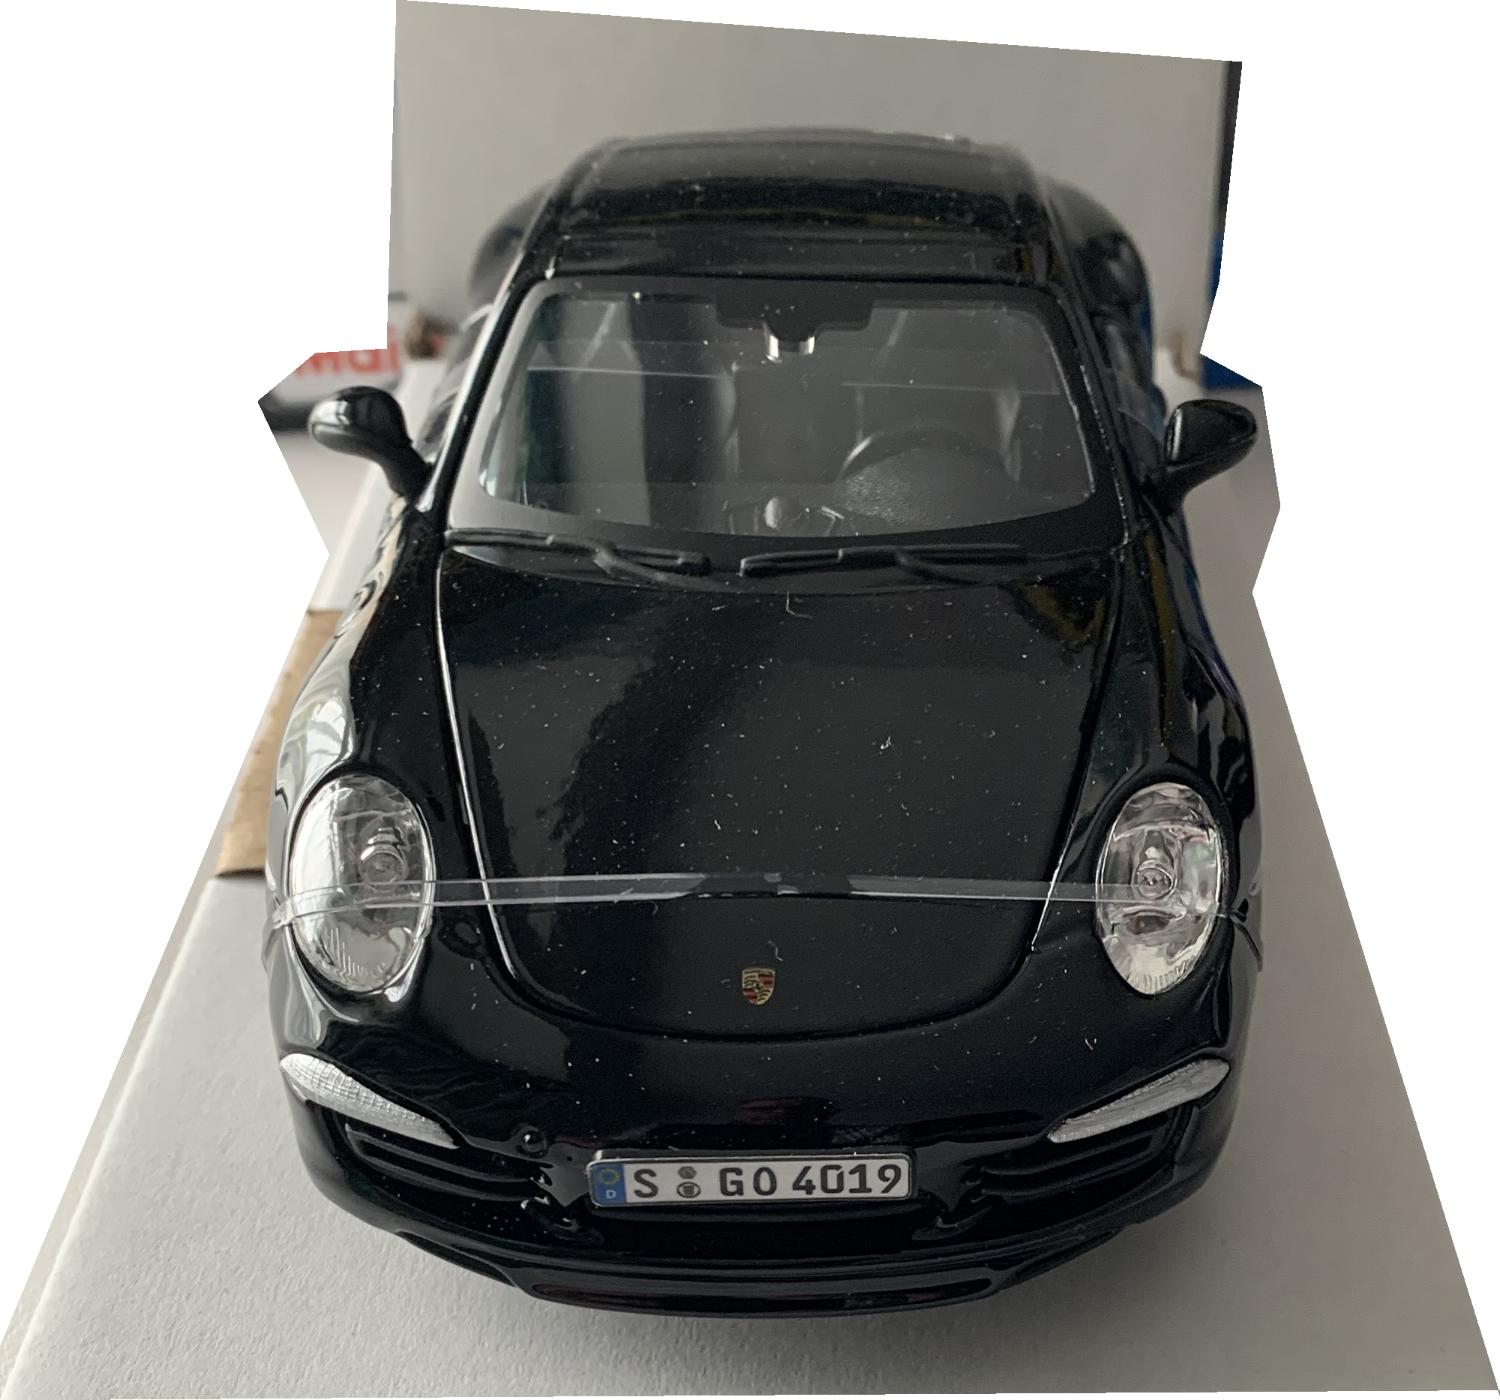 Porsche 911 Carrera S in black 1:24 scale model from Bburago